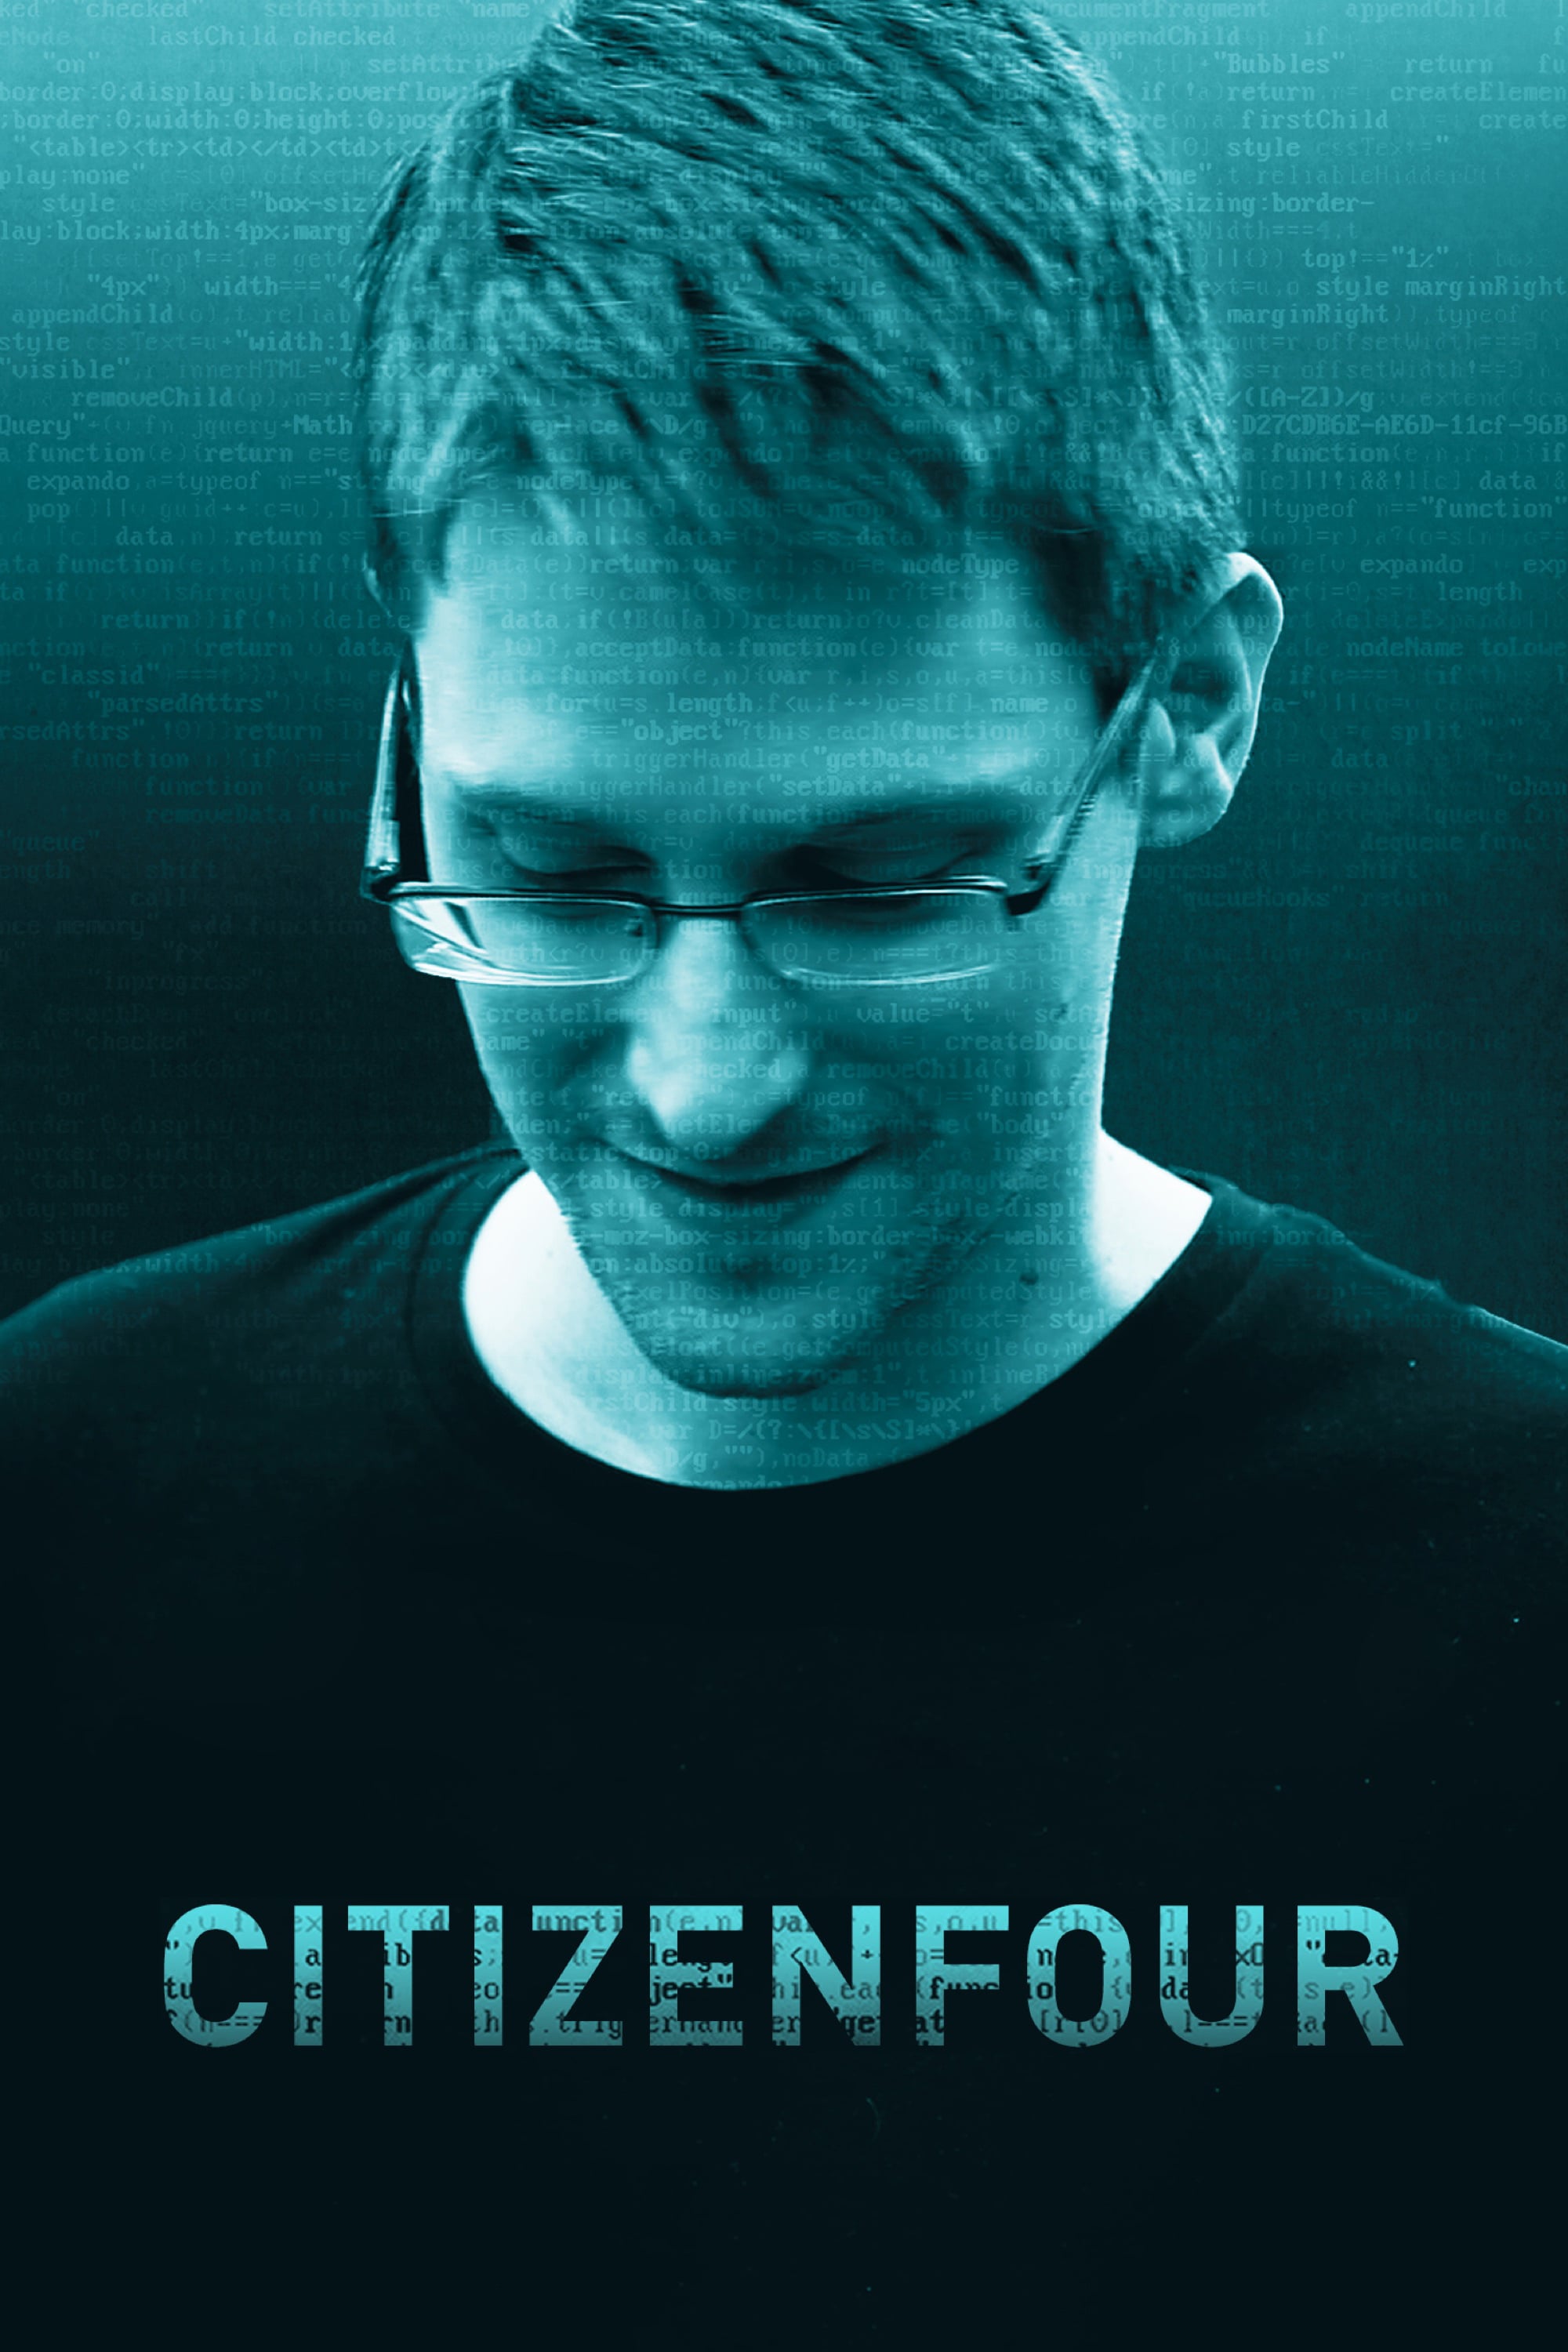 Caratula de Citizenfour (Citizenfour) 